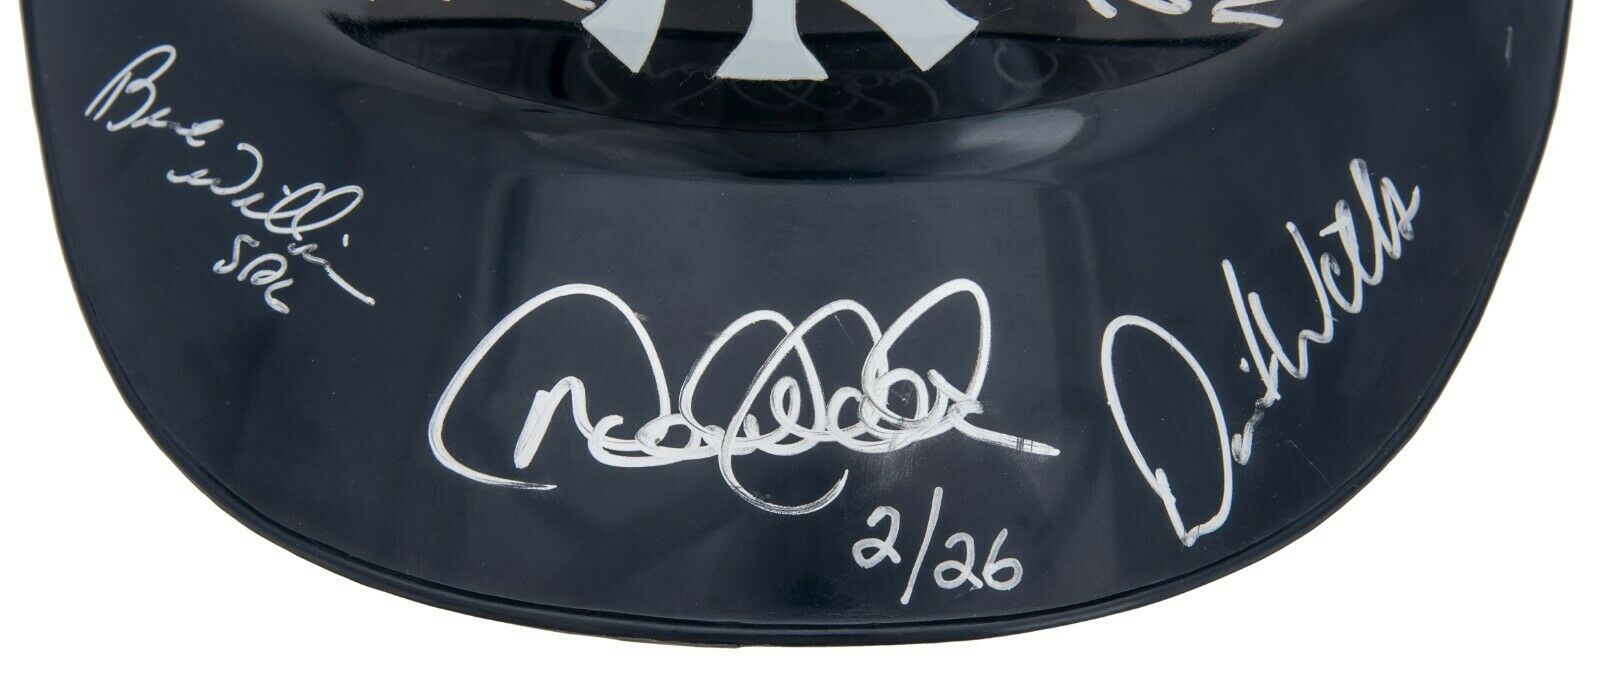 2000 New York Yankees World Series Champs Team Signed Helmet Derek Jeter Beckett